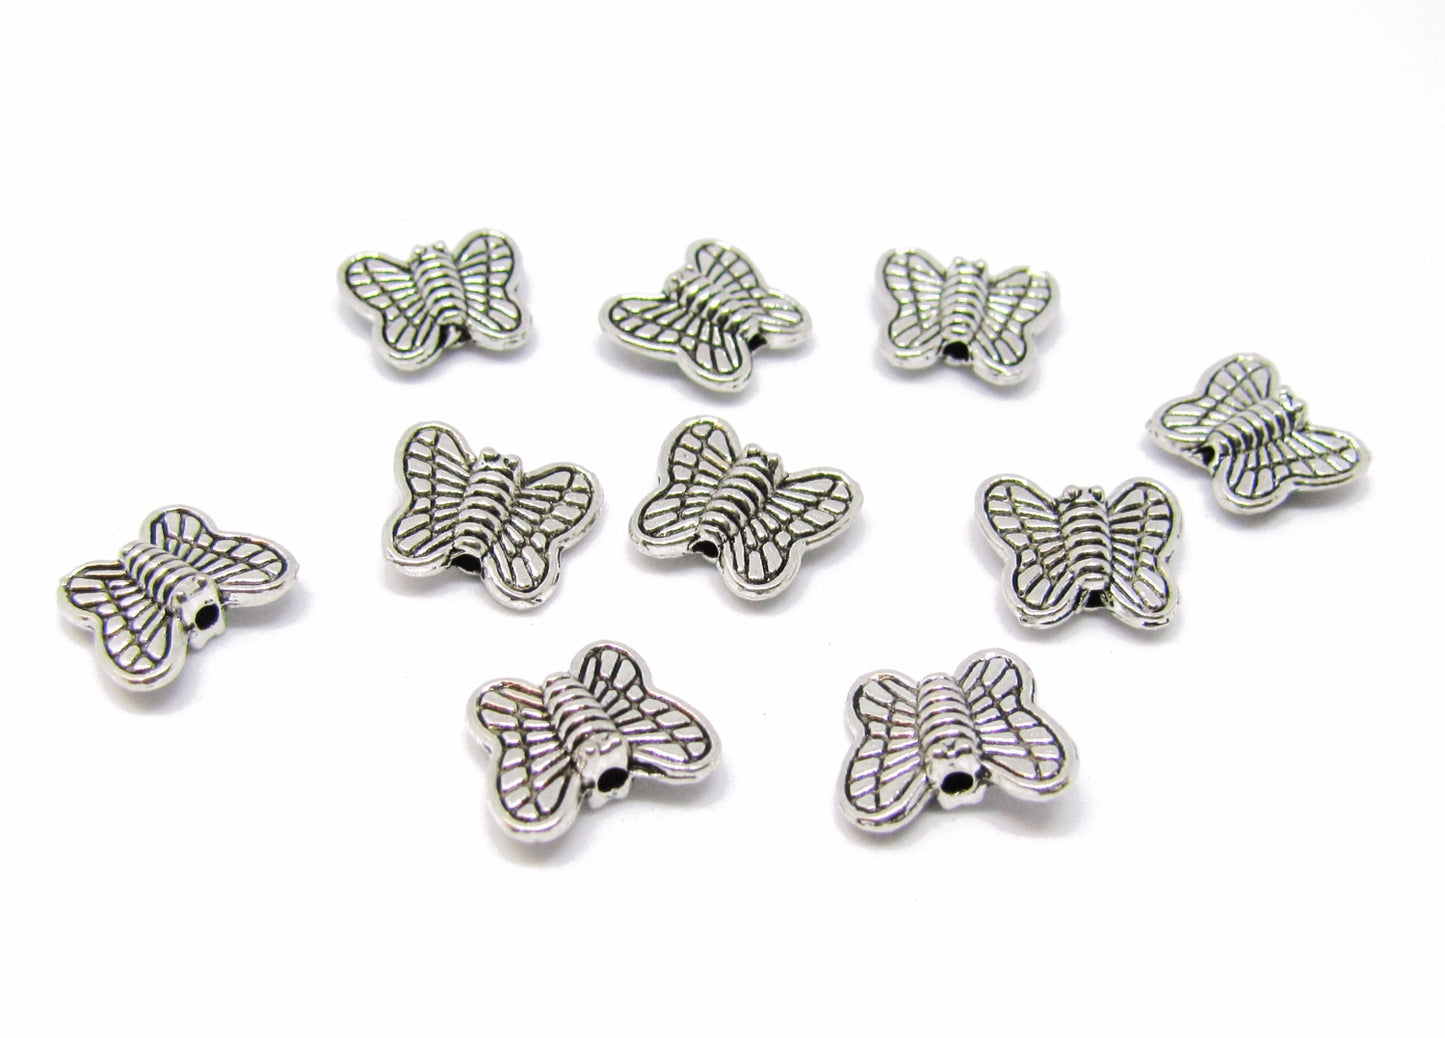 20 Metallperlen Schmetterling, silberfarben,10 mm, Perlen basteln, verzieren